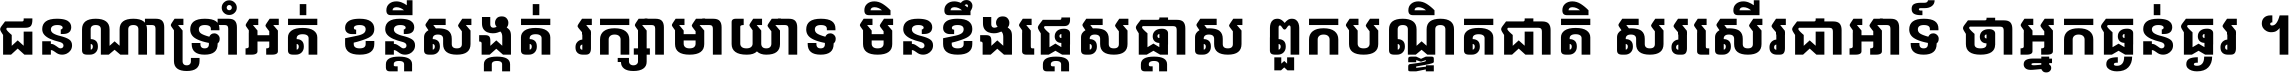 Noto Sans Khmer UI Condensed Bold